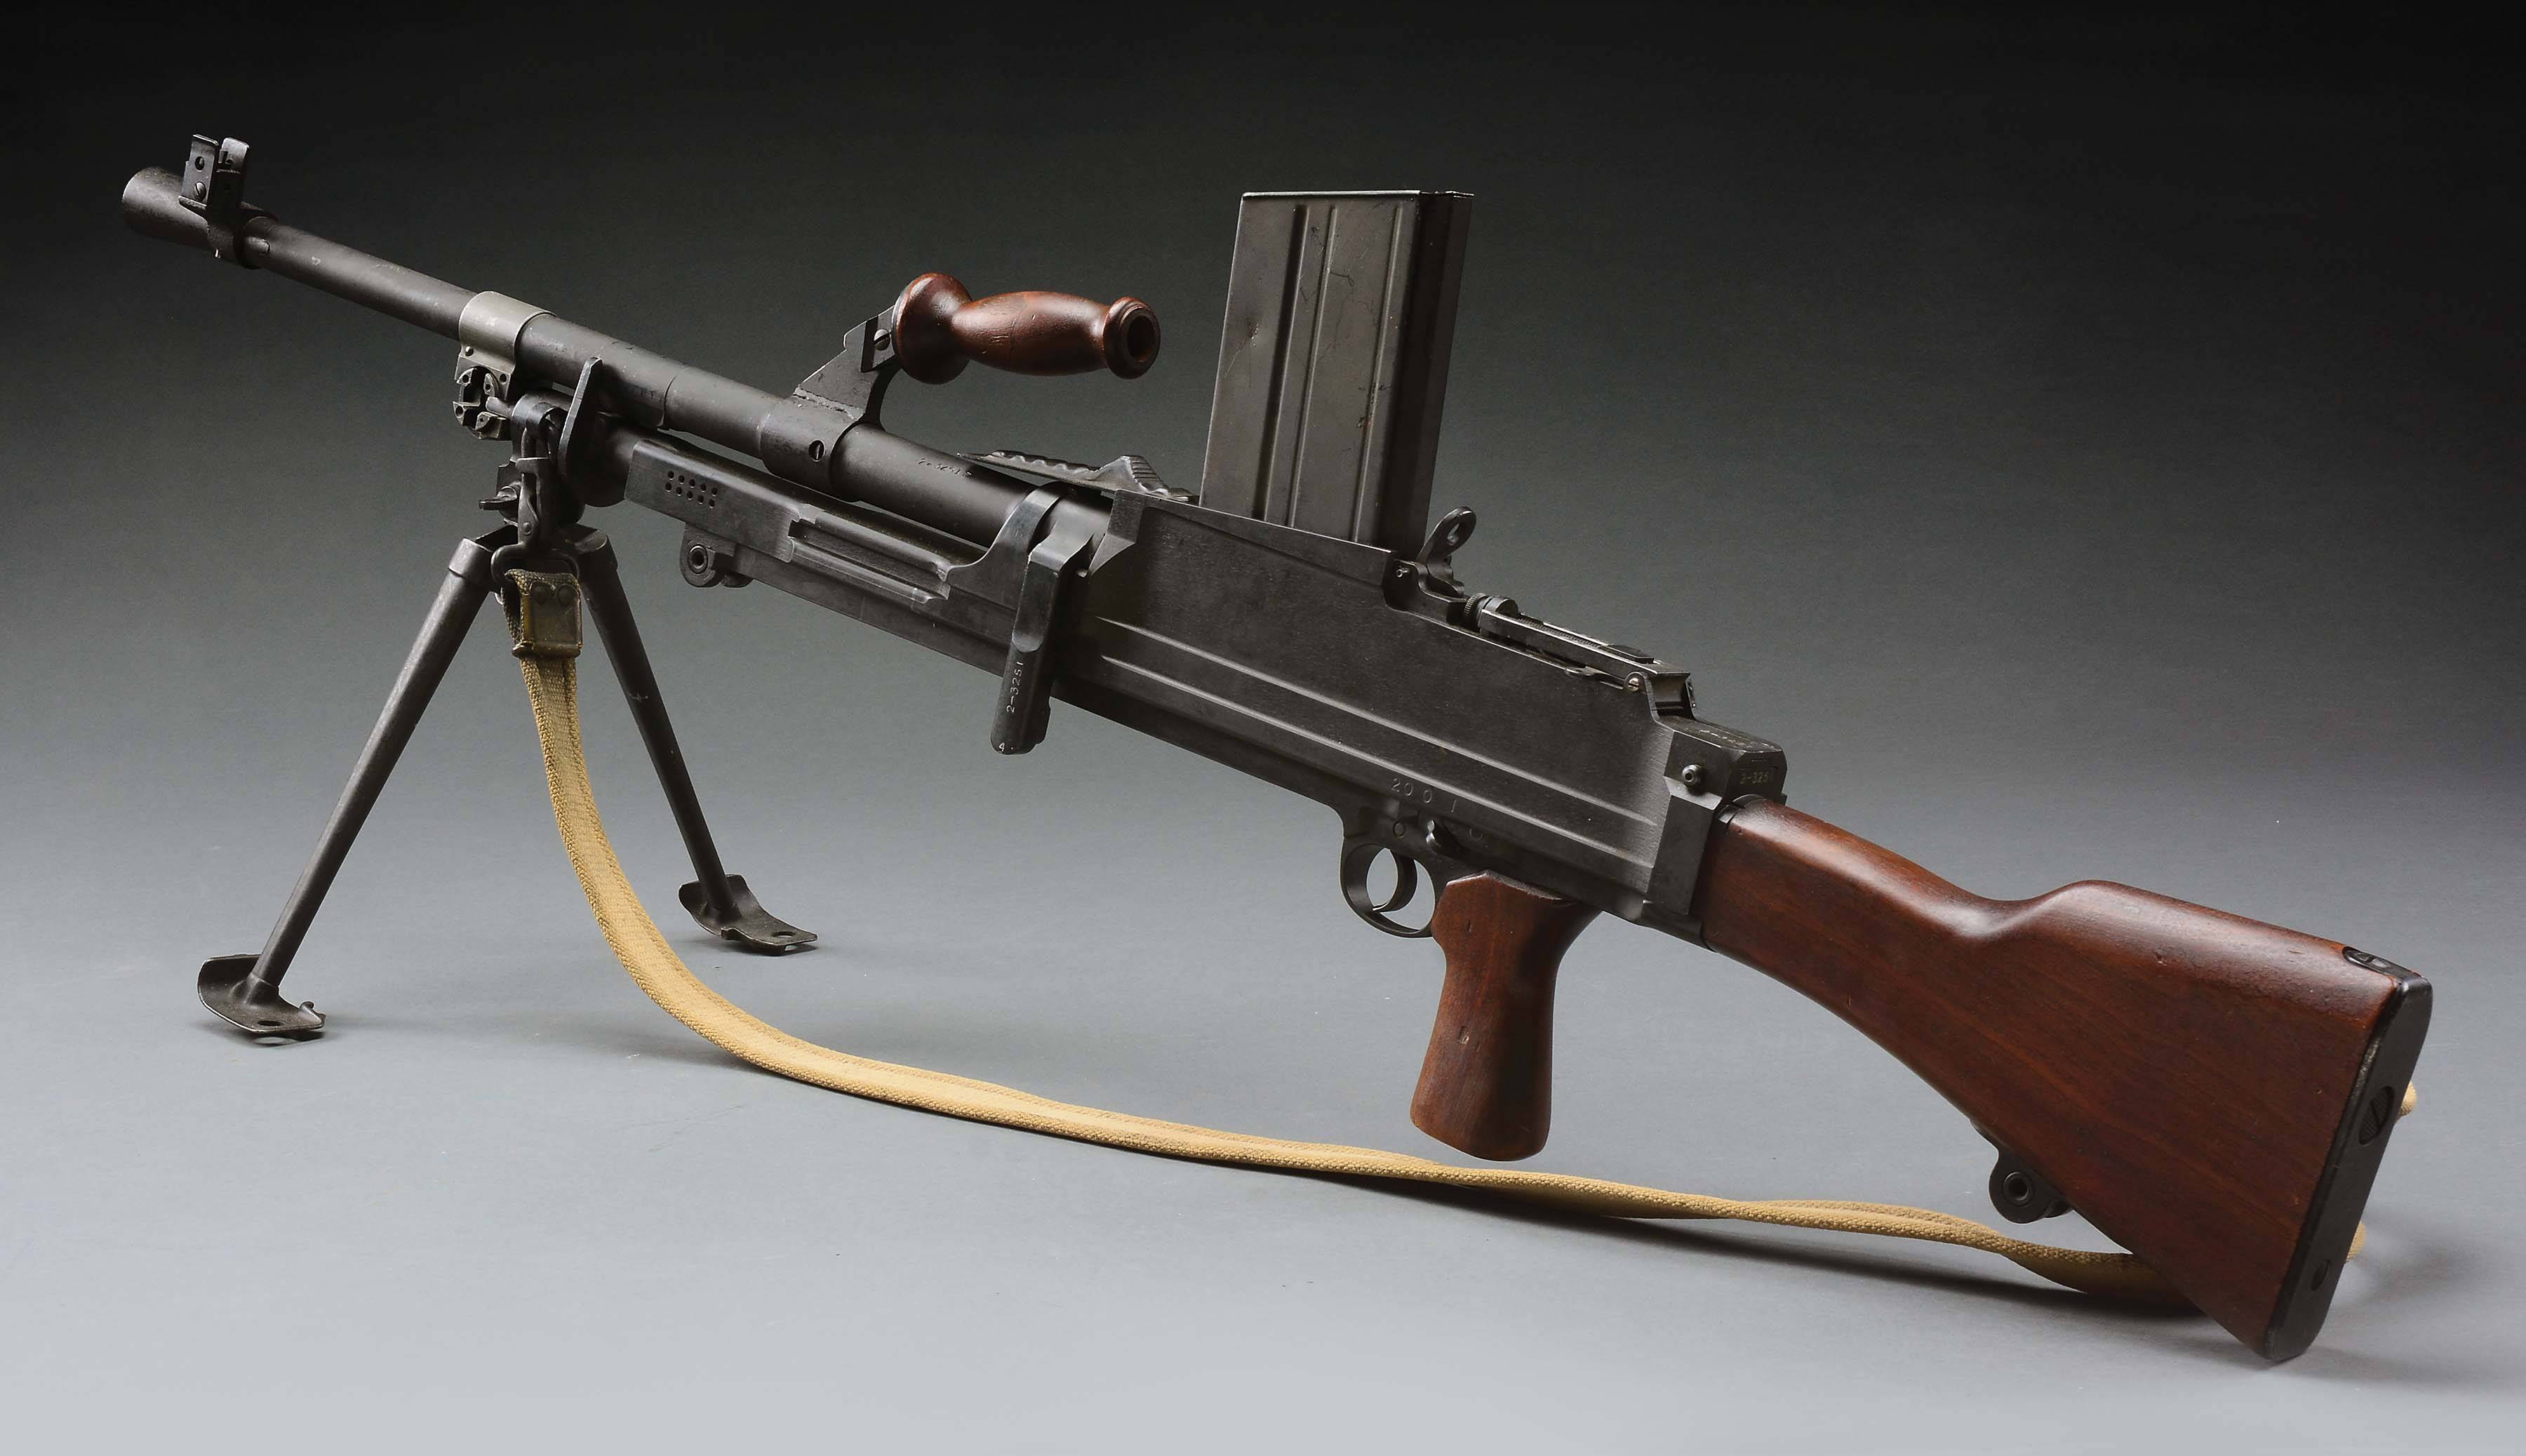 原创吊打日军的zb26轻机枪:弹匣到底是直的还是弯的?